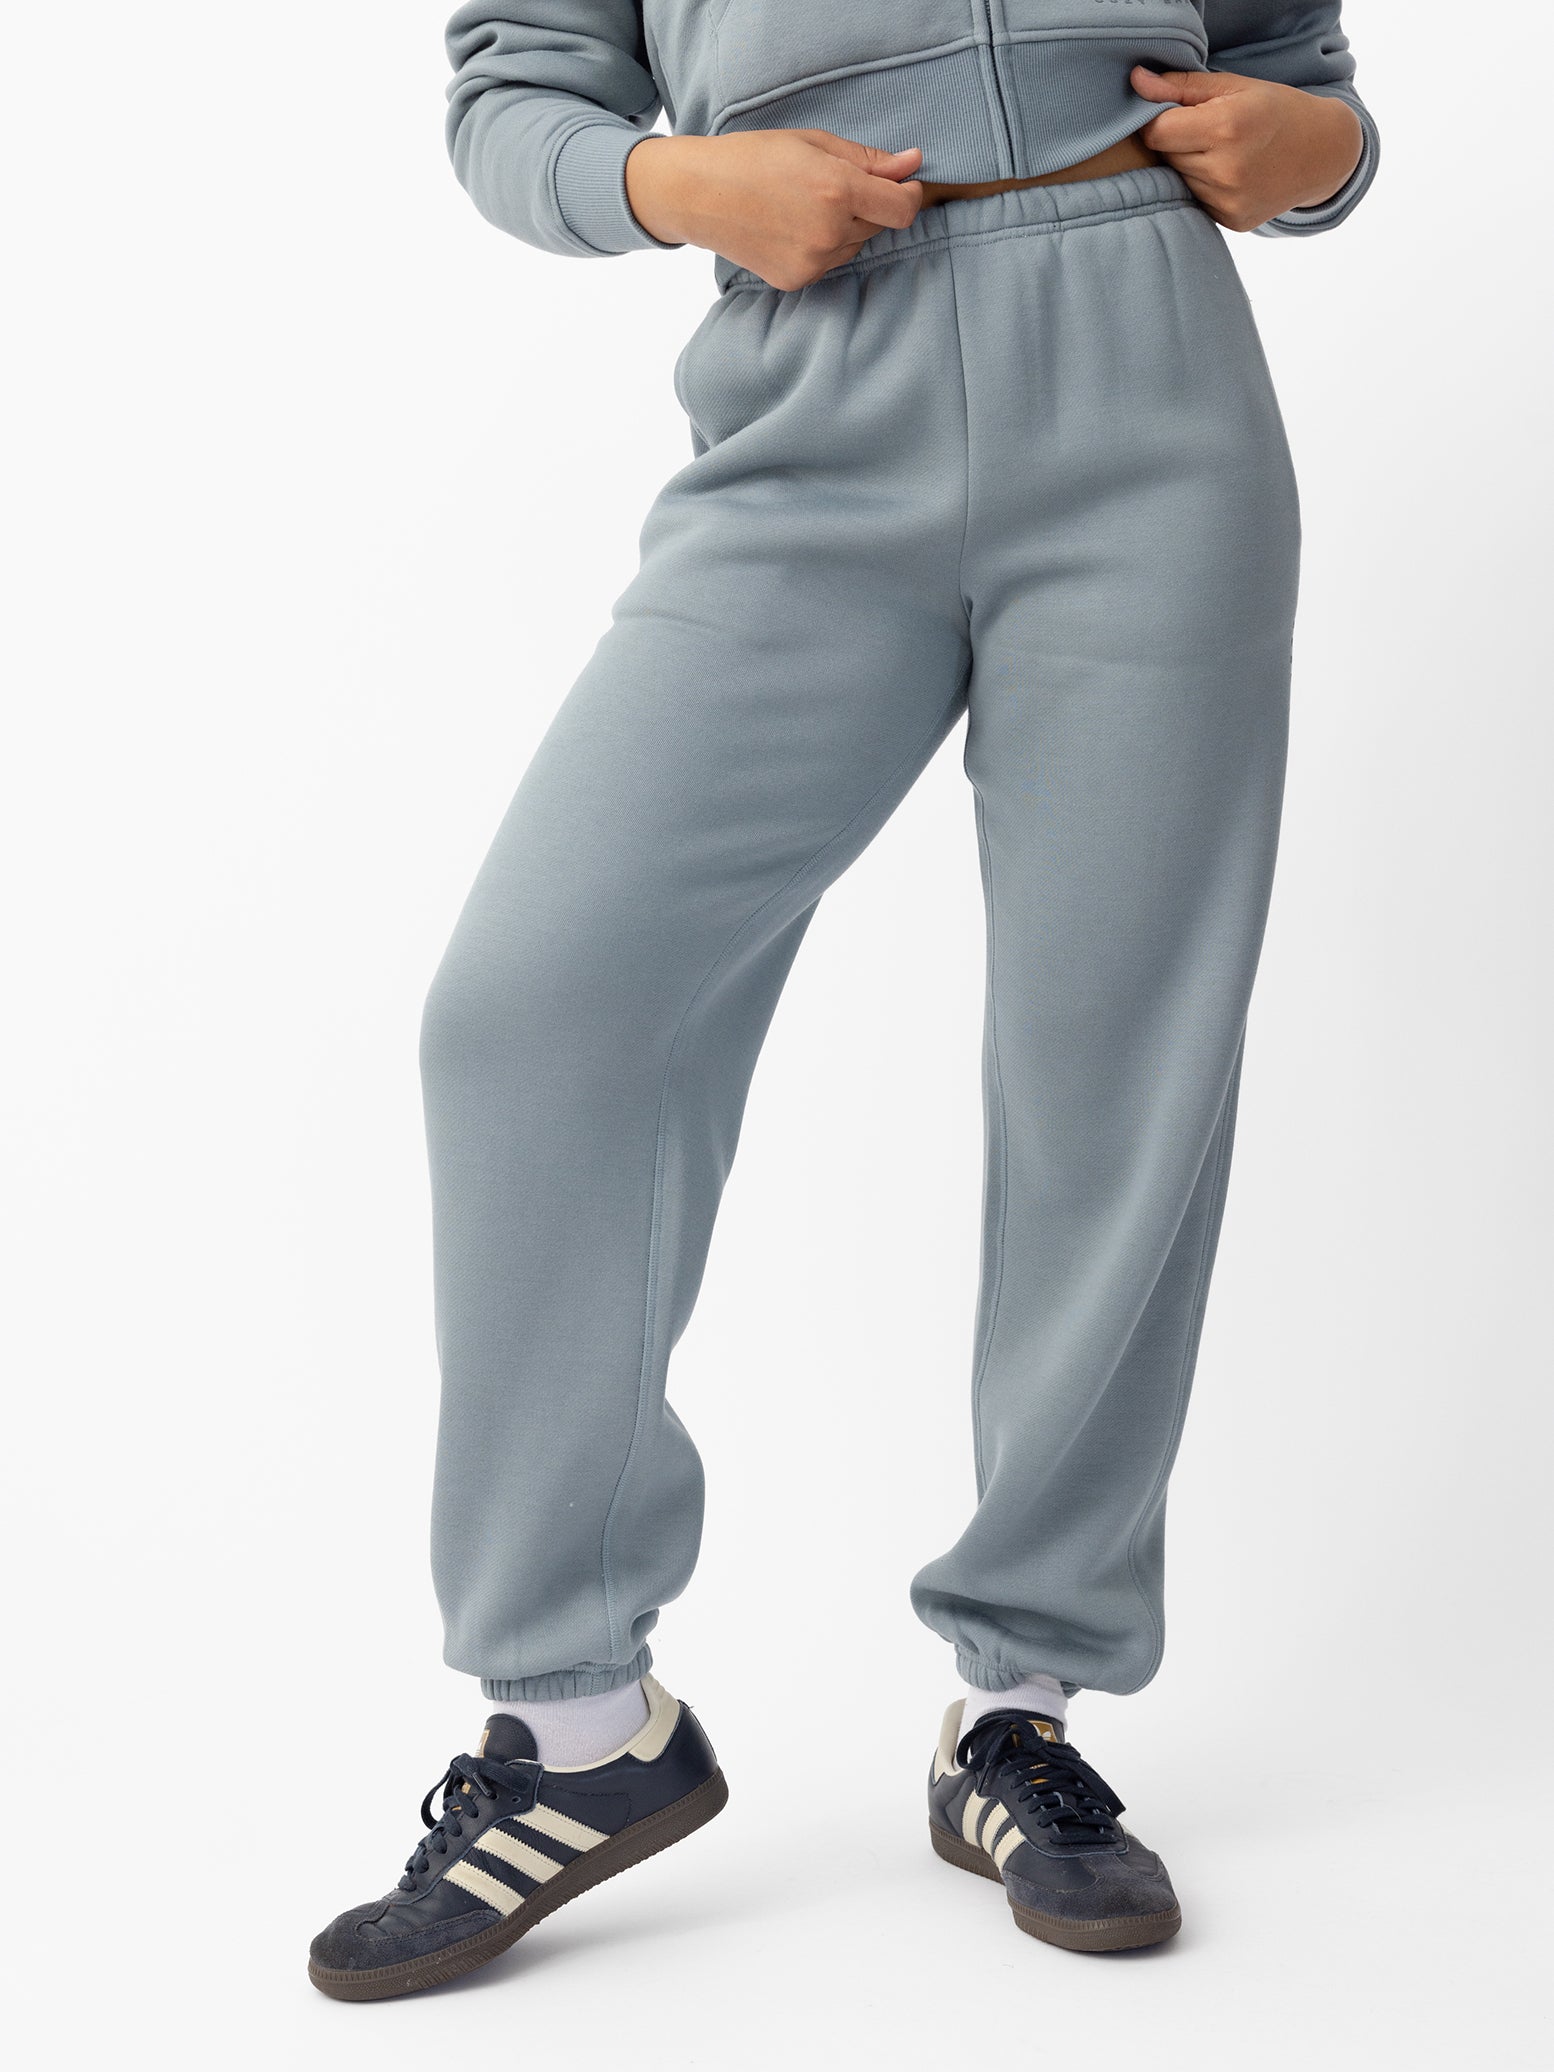  Woman wearing Smokey Blue CityScape Sweat Pant with white background 